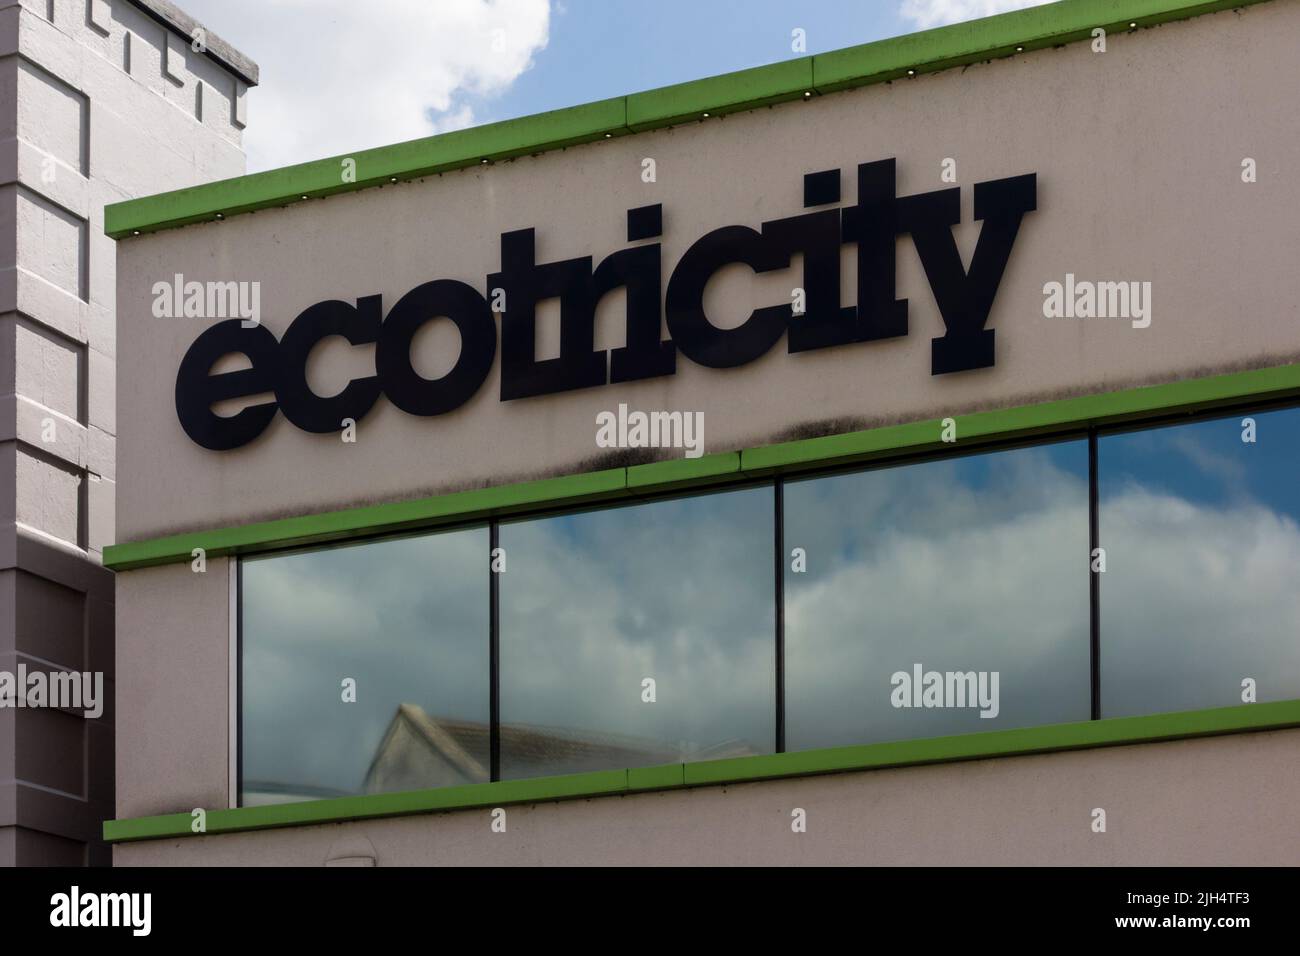 Ecotricity green energy company logo, Stroud, Gloucestershire, UK Stock Photo